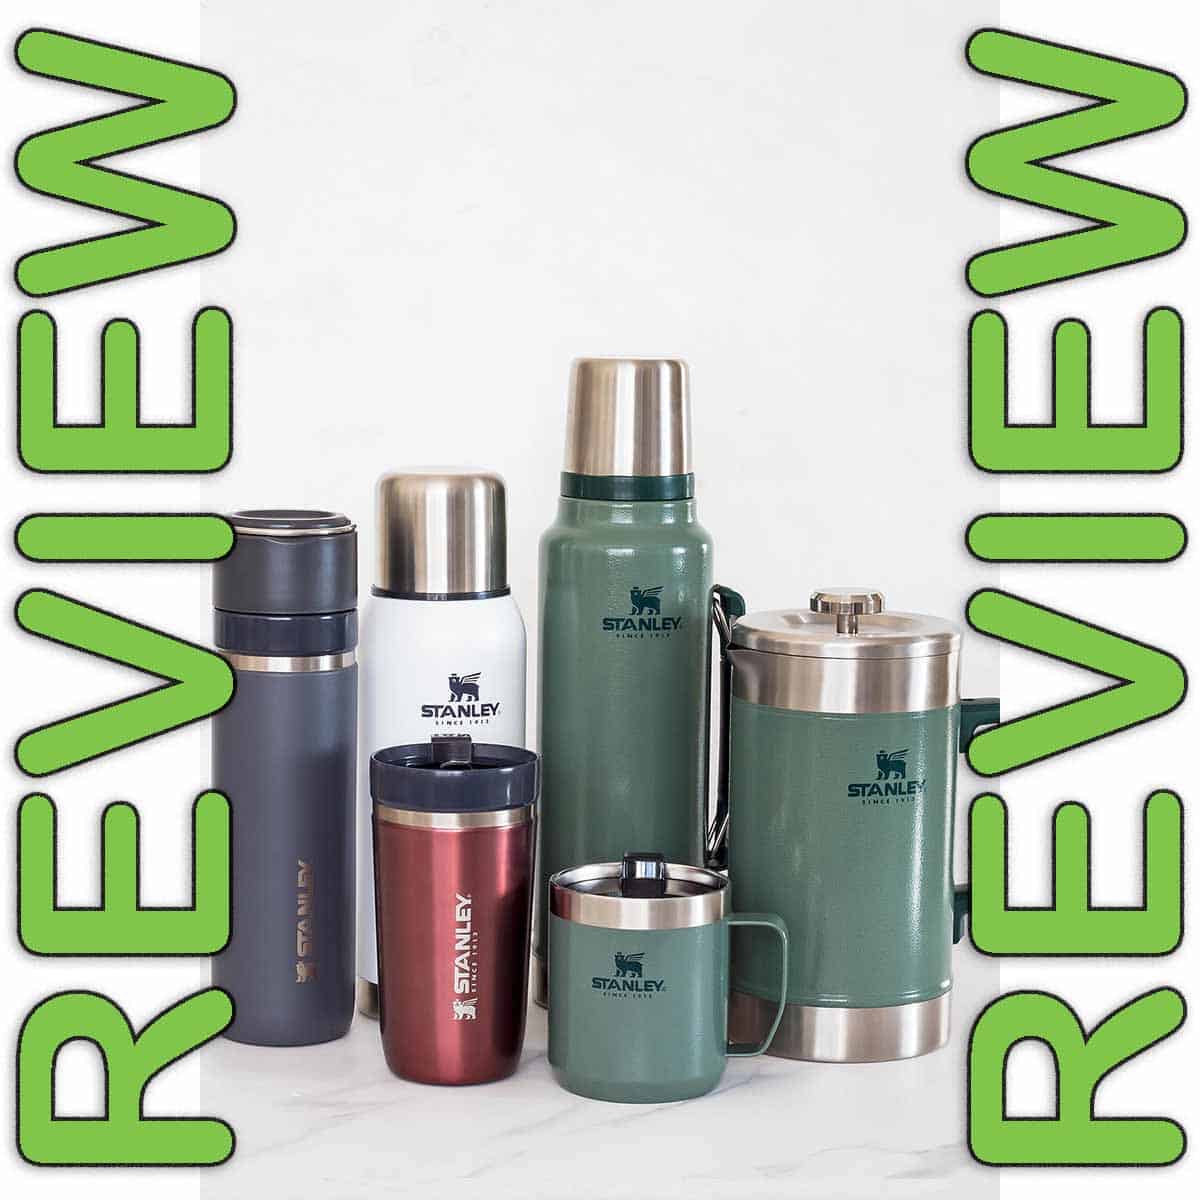 Stanley Vacuum Bottle Reviews » LeelaLicious